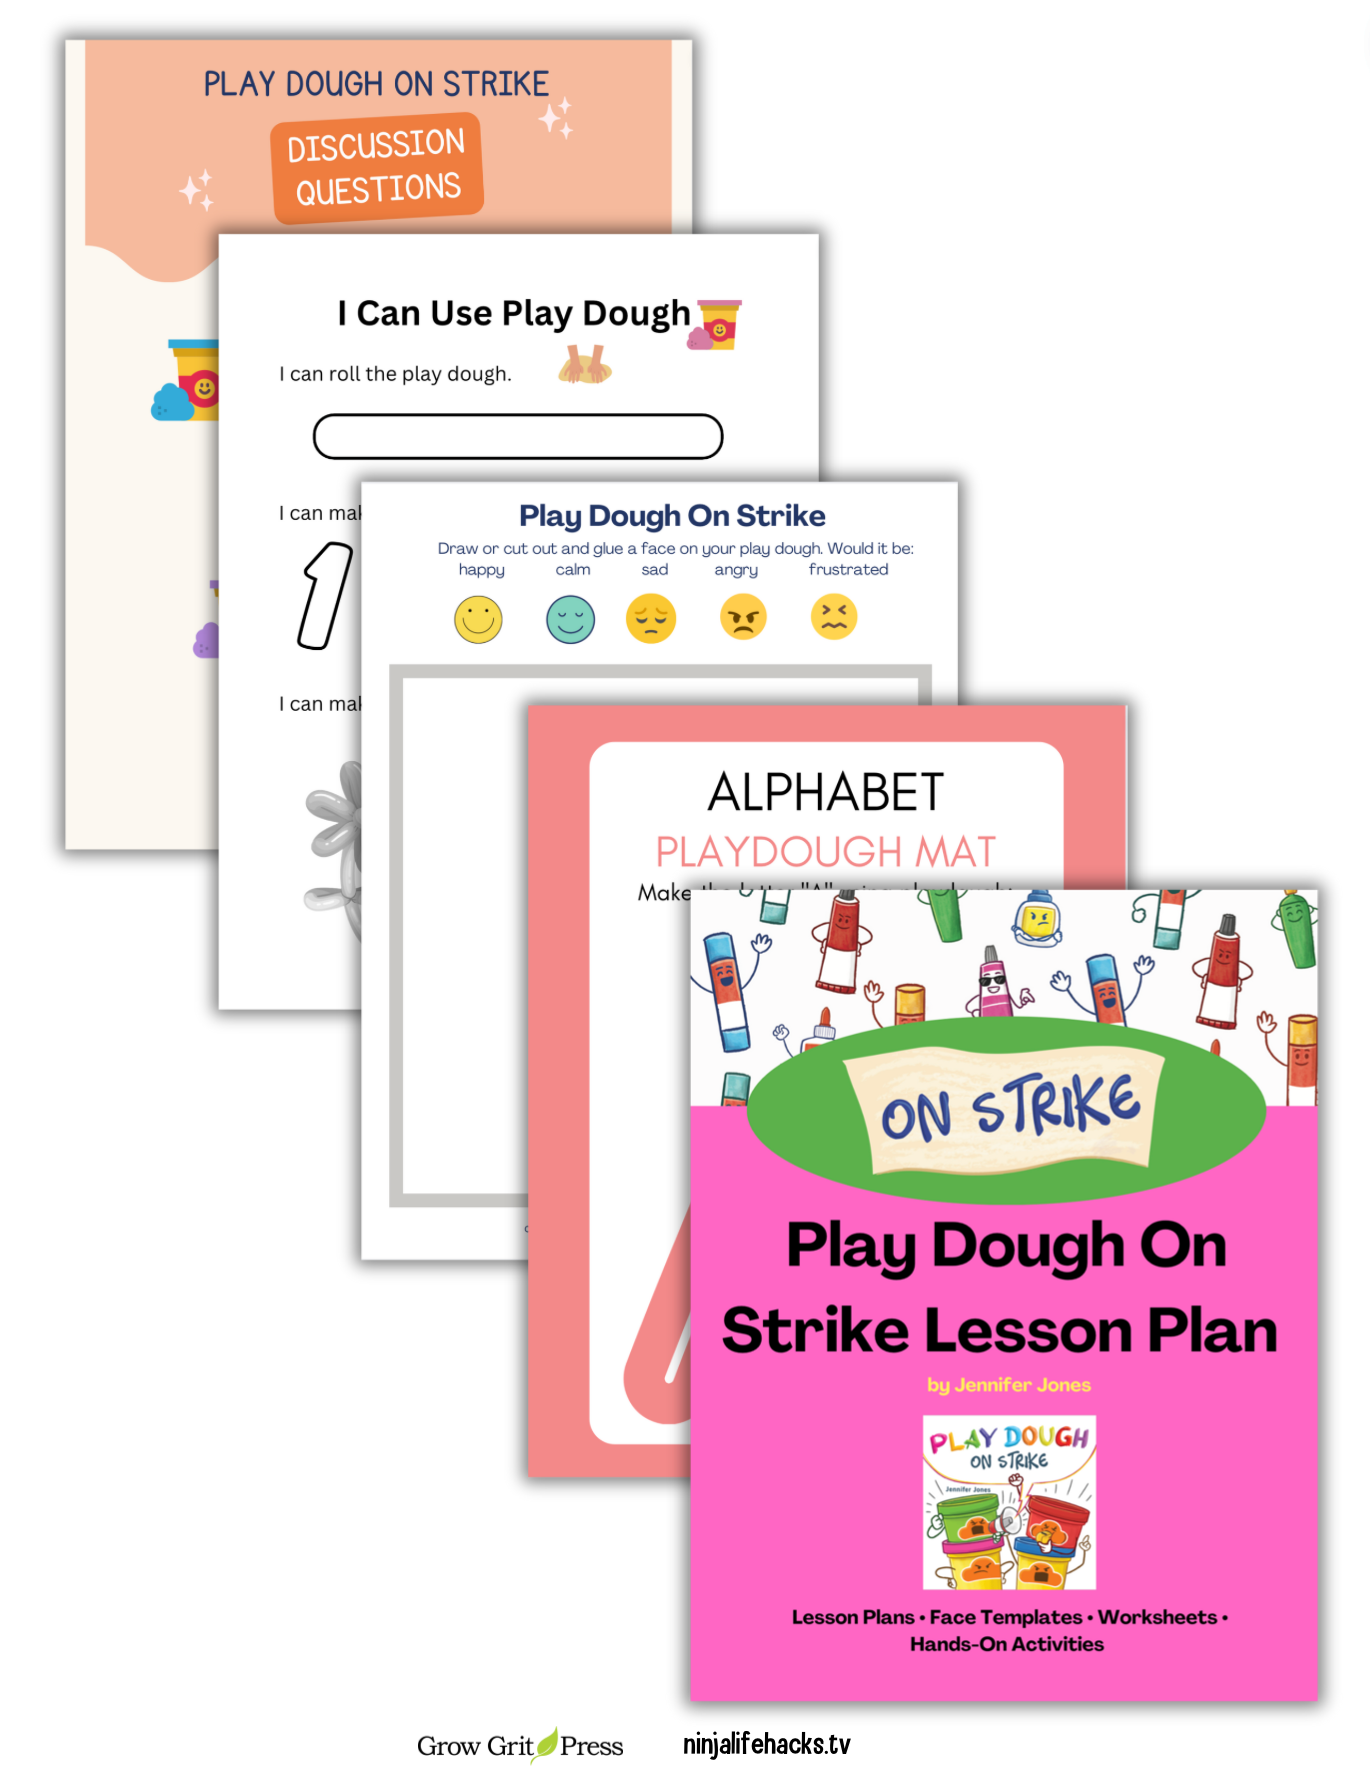 Play Dough On Strike Lesson Plan